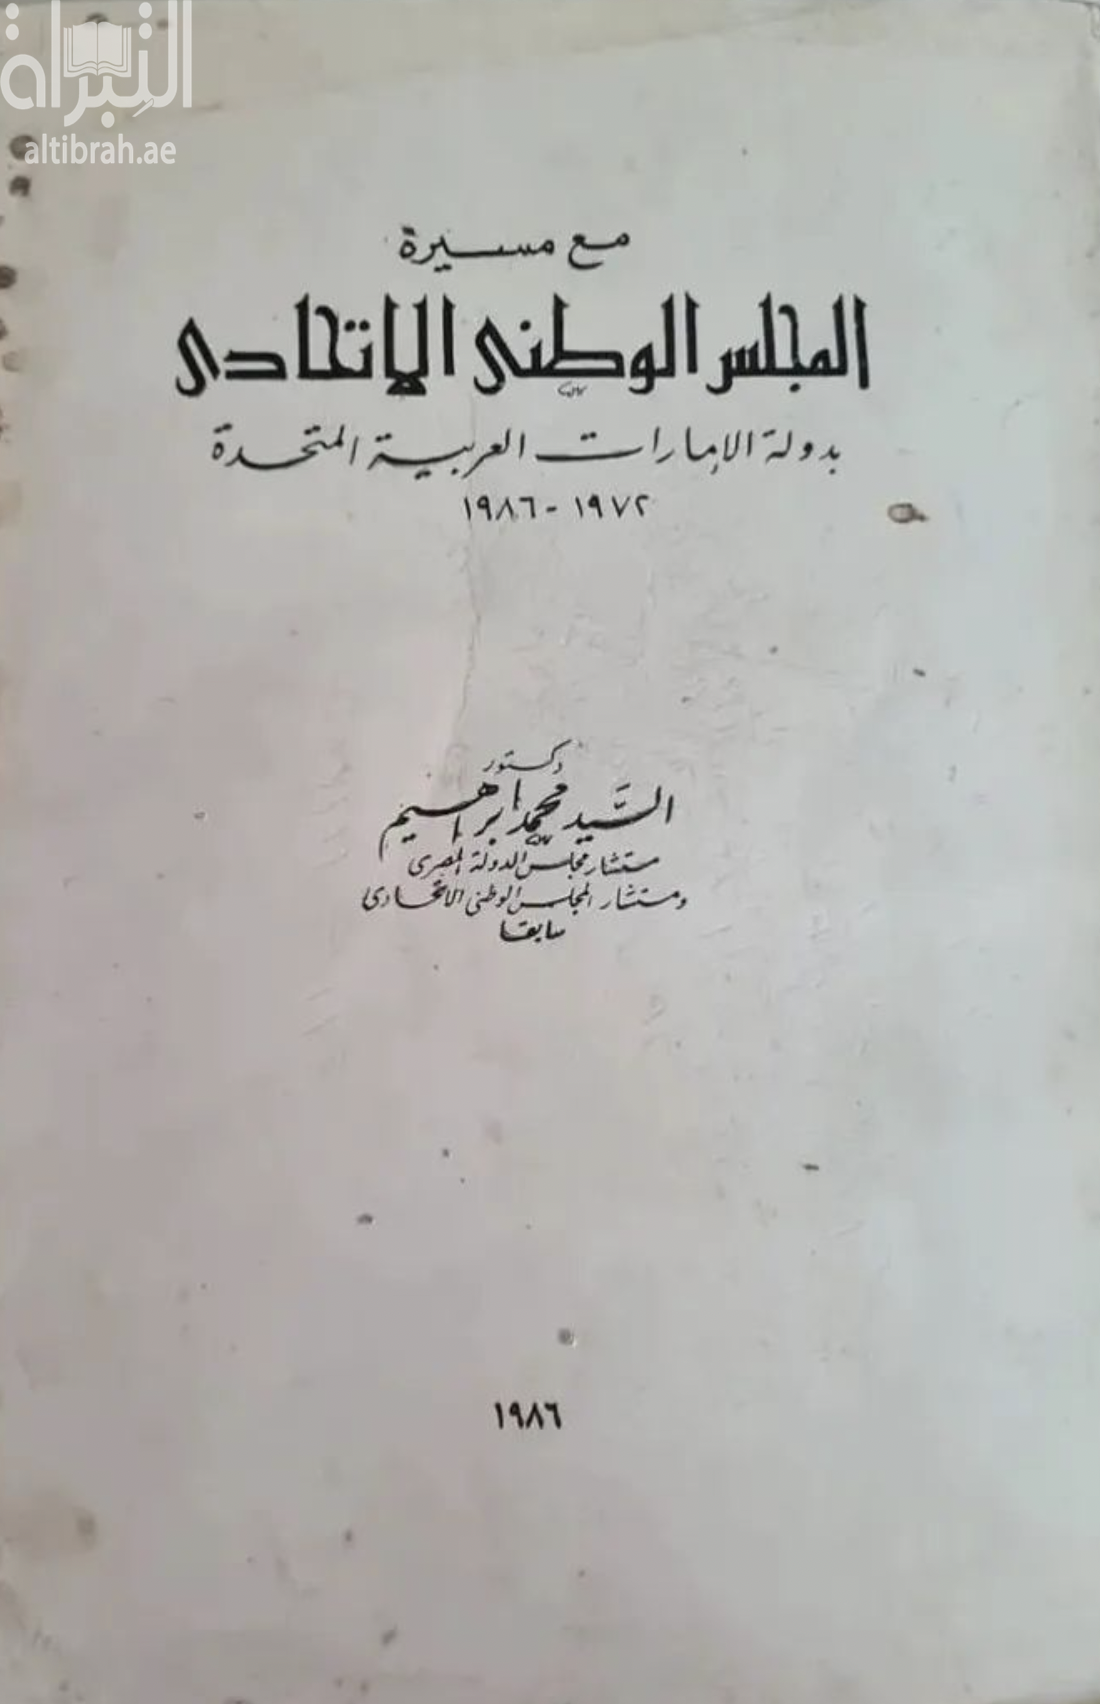 مع مسيرة المجلس الوطني الاتحادي بدولة الإمارات العربية المتحدة 1972 - 1986